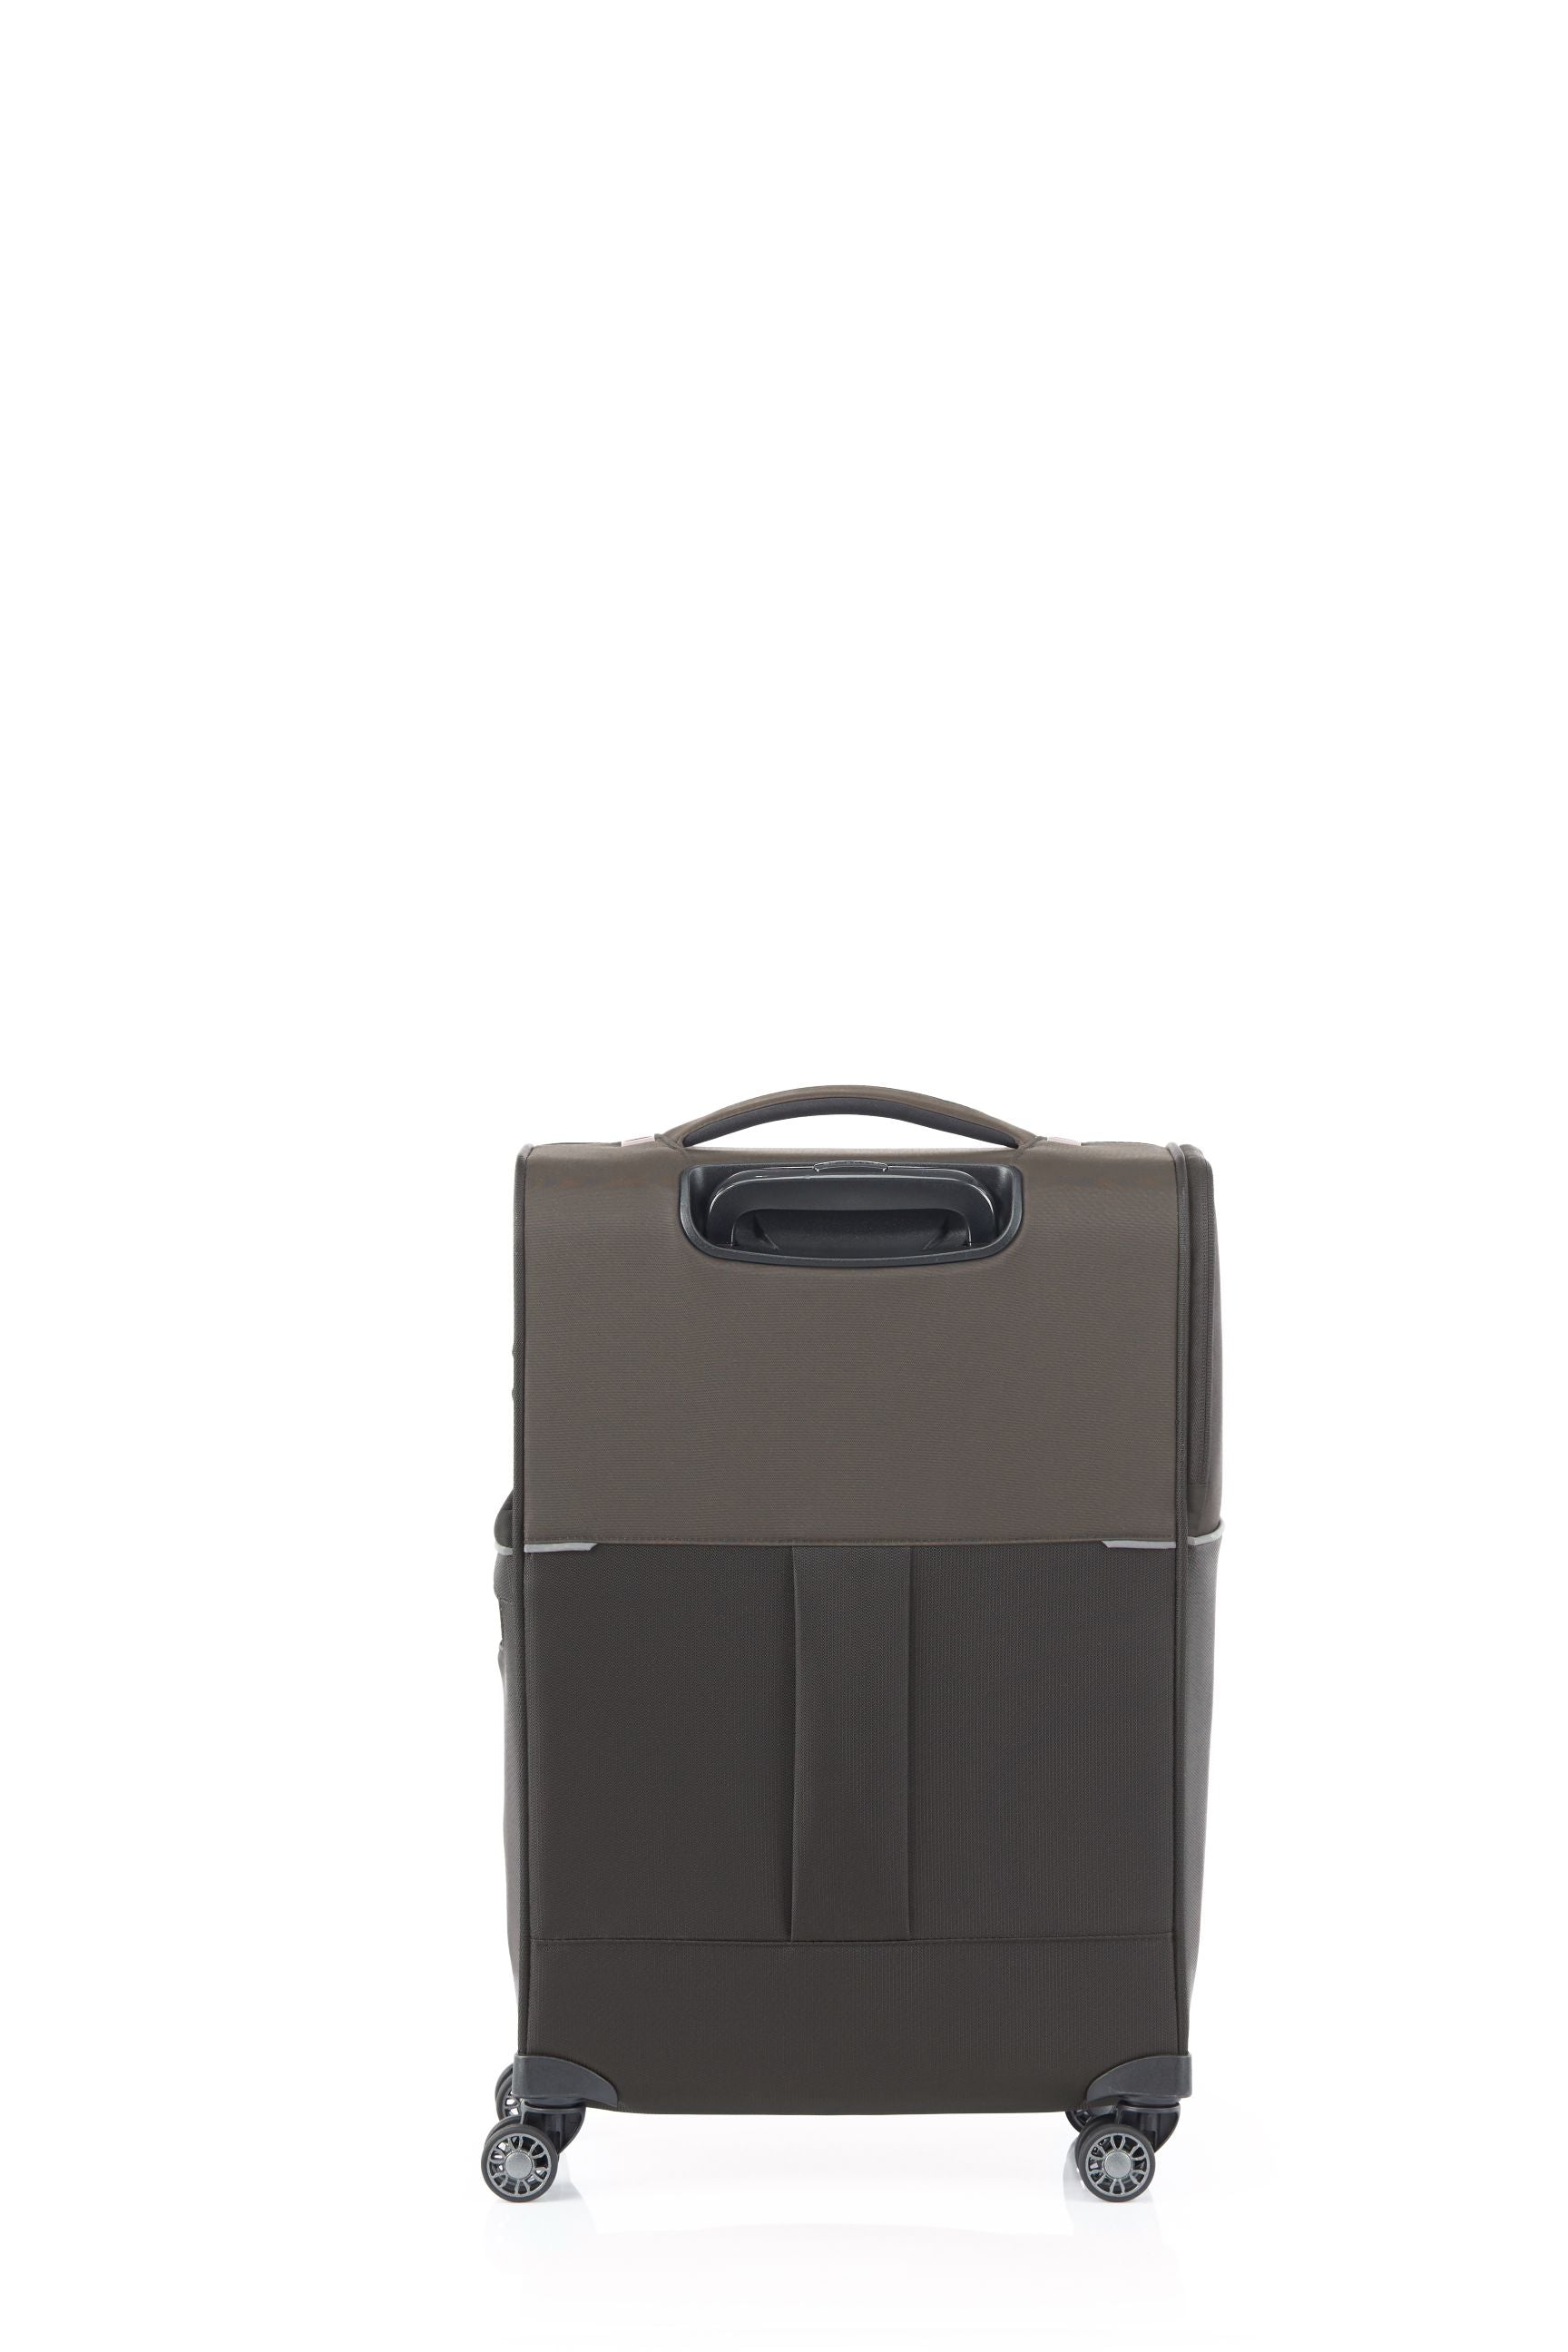 Samsonite - 73HR 55cm Small Suitcase - Platinum Grey-5